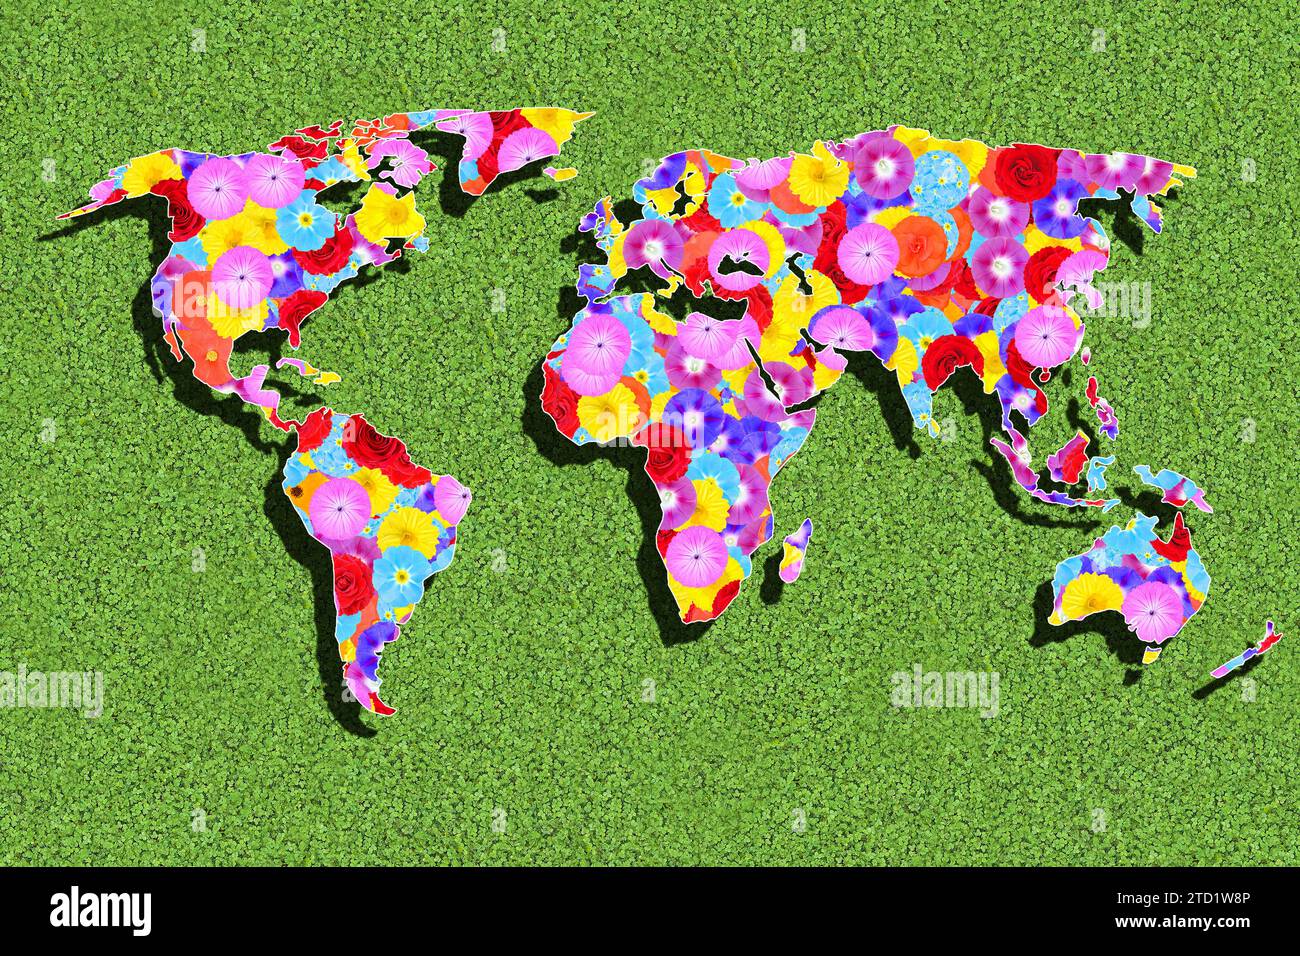 Umriss der Welt, alle Kontinente, mit bunten Blumen auf einer grünen Wiese, Grafik Stockfoto